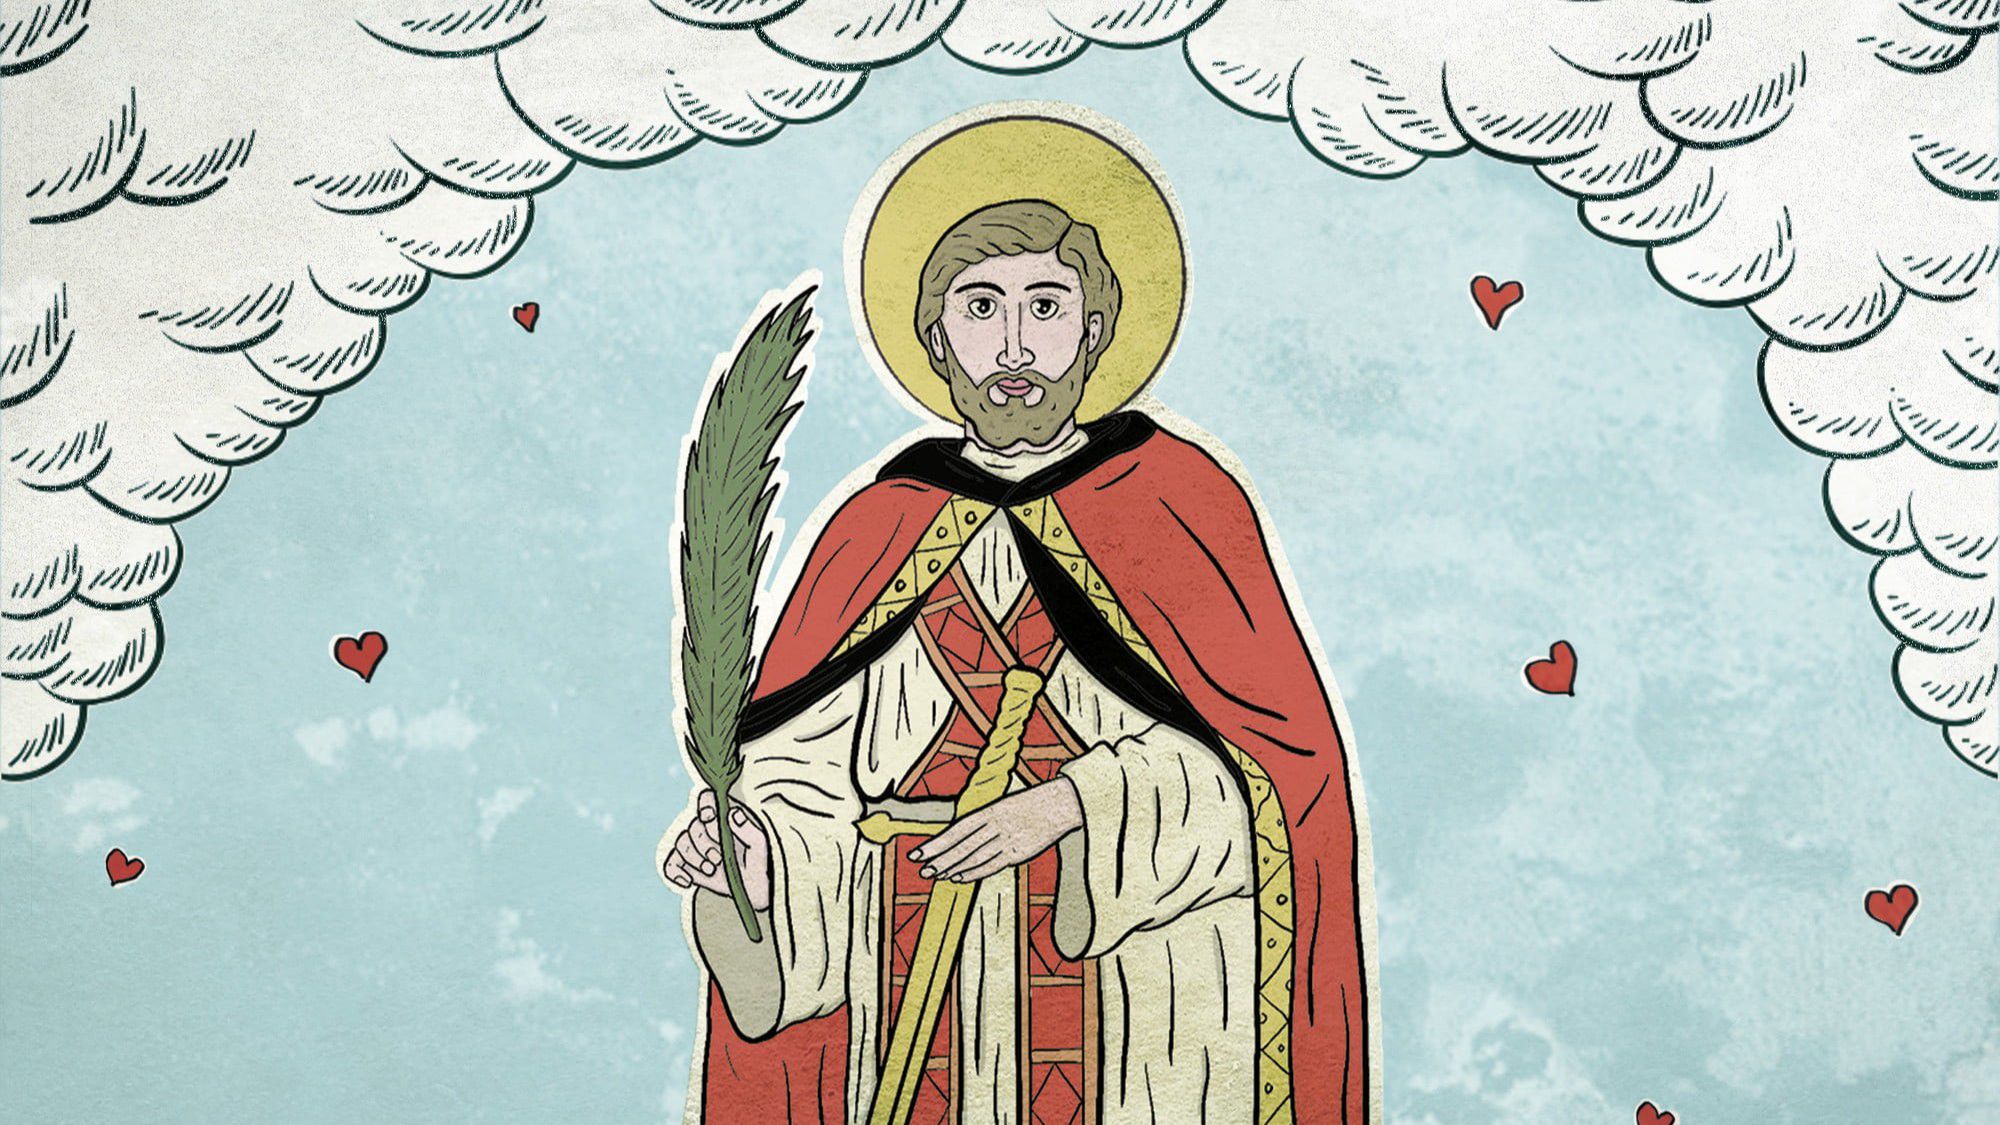 Aziz Valentine Kimdir? Neden öldürüldü? | Sevgililer günü nasıl ortaya çıktı?